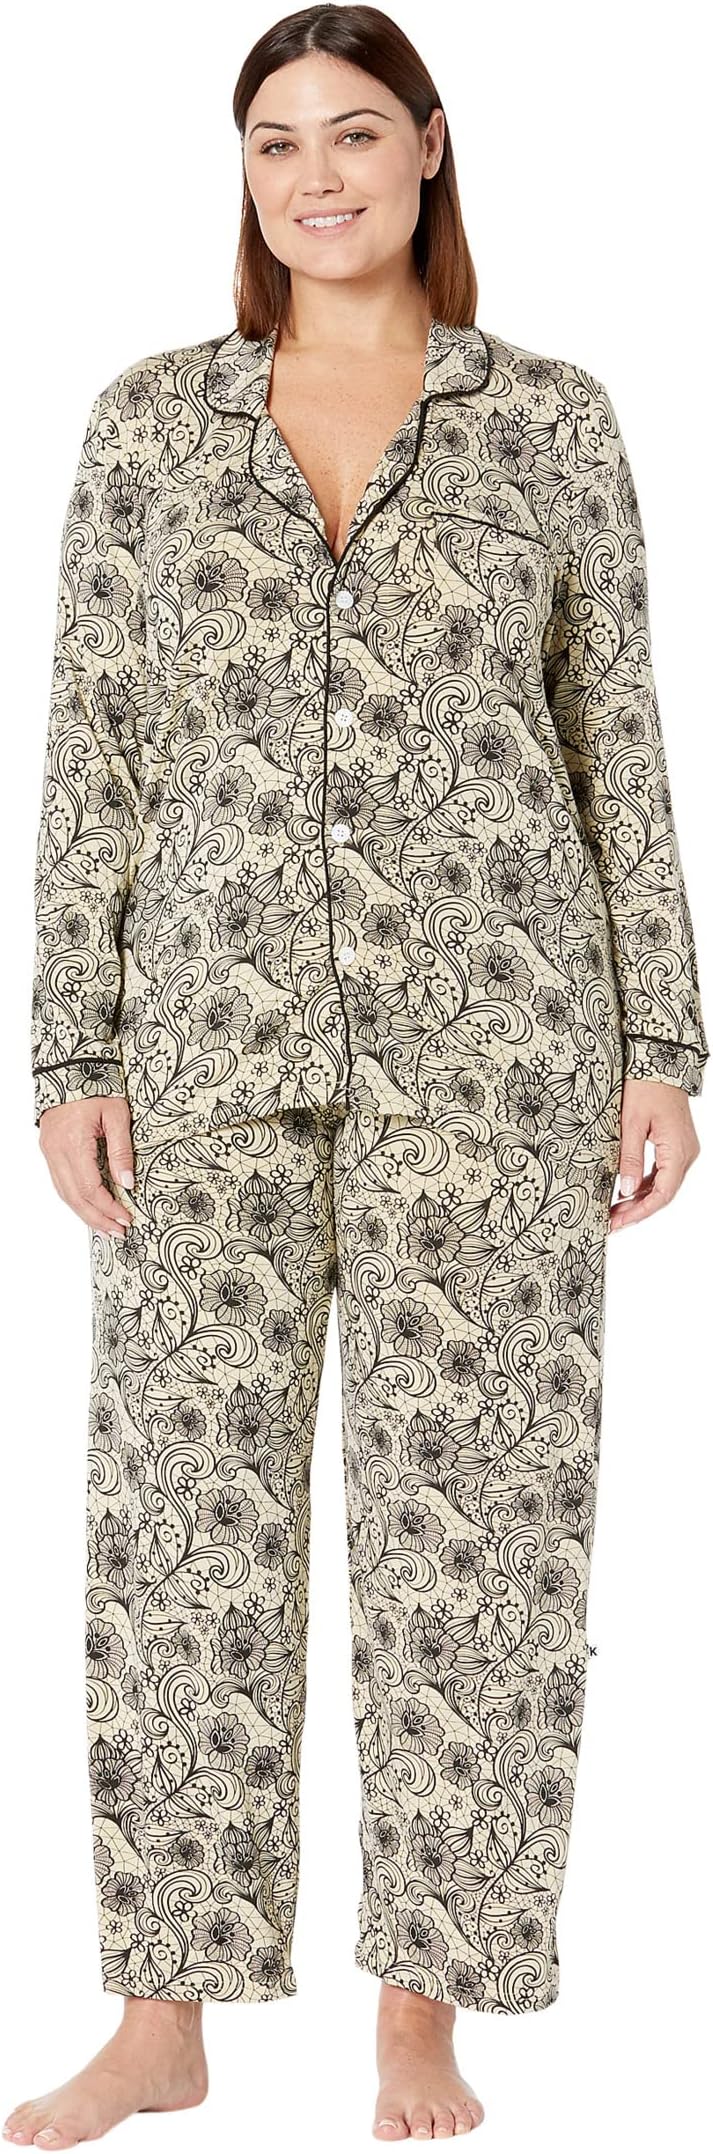 Пижамный комплект с воротником Kickee Pants, цвет Burlap Lace цена и фото